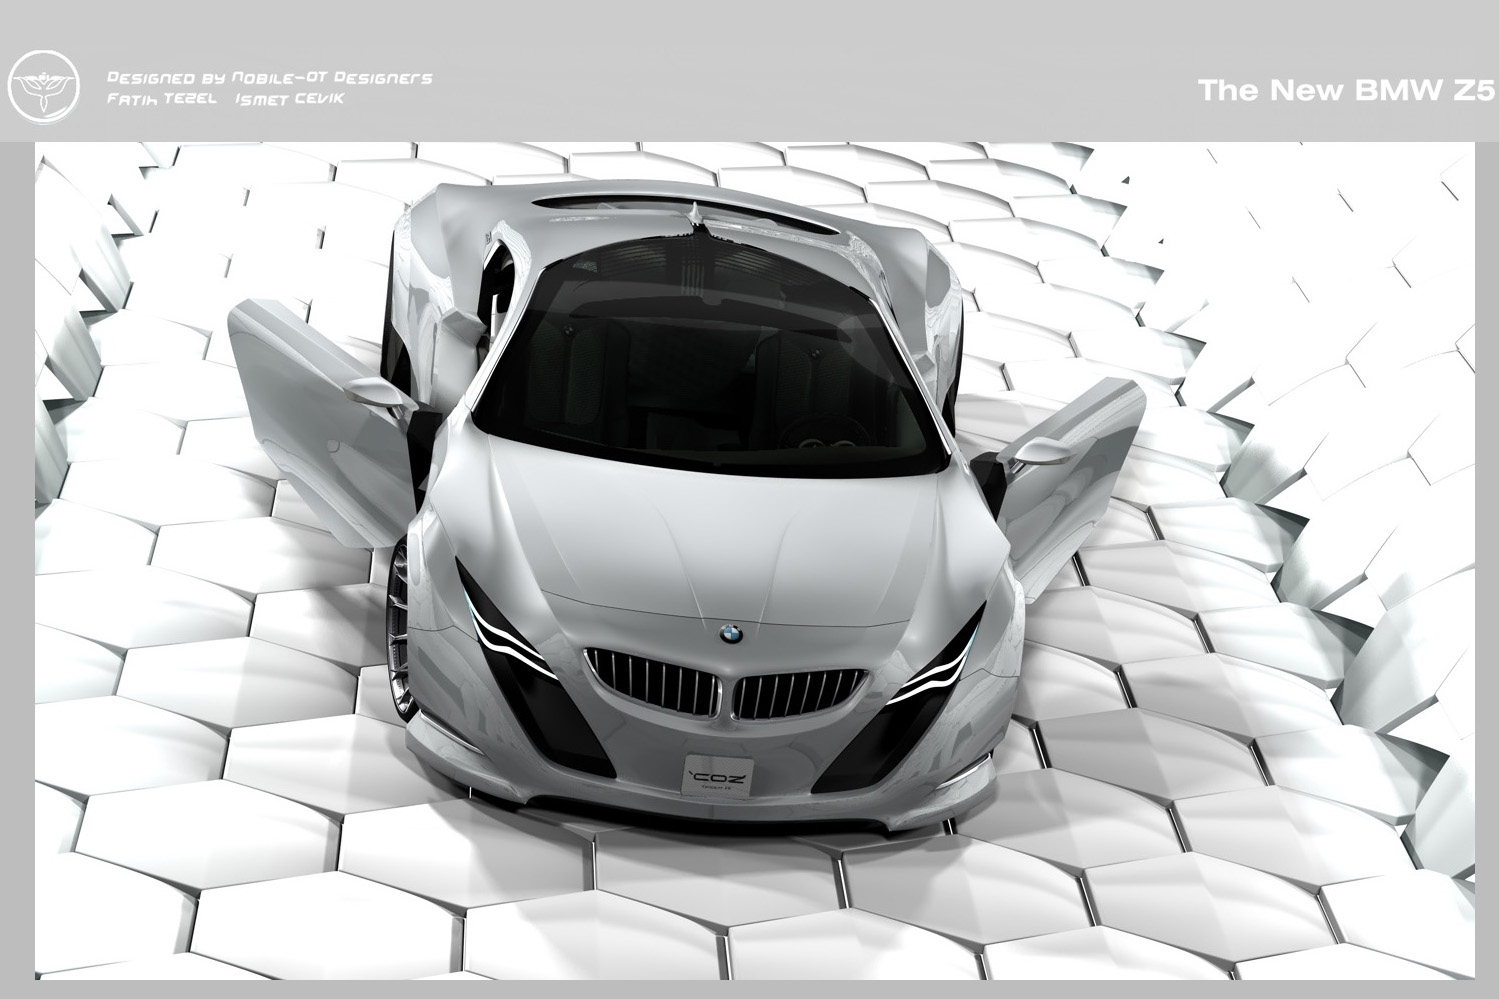 BMW Z5 Concept